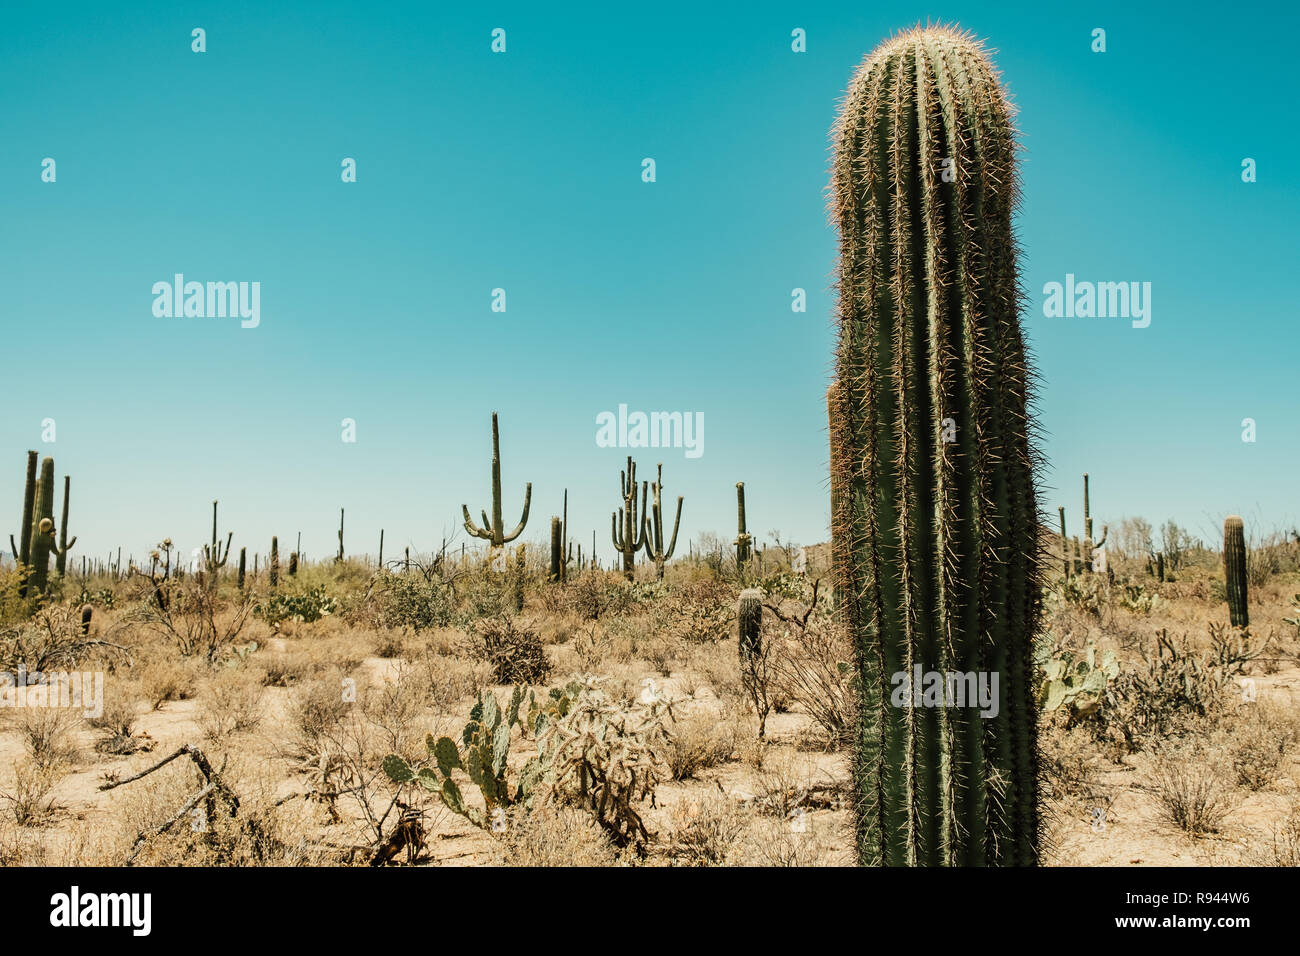 Eine Vielzahl von Kakteen Arten, Cholla Cactus, Feigenkakteen, Saguaro Cactus in der Sonora Wüste im Saguaro National Park in Tuscon, Arizona, USA Stockfoto